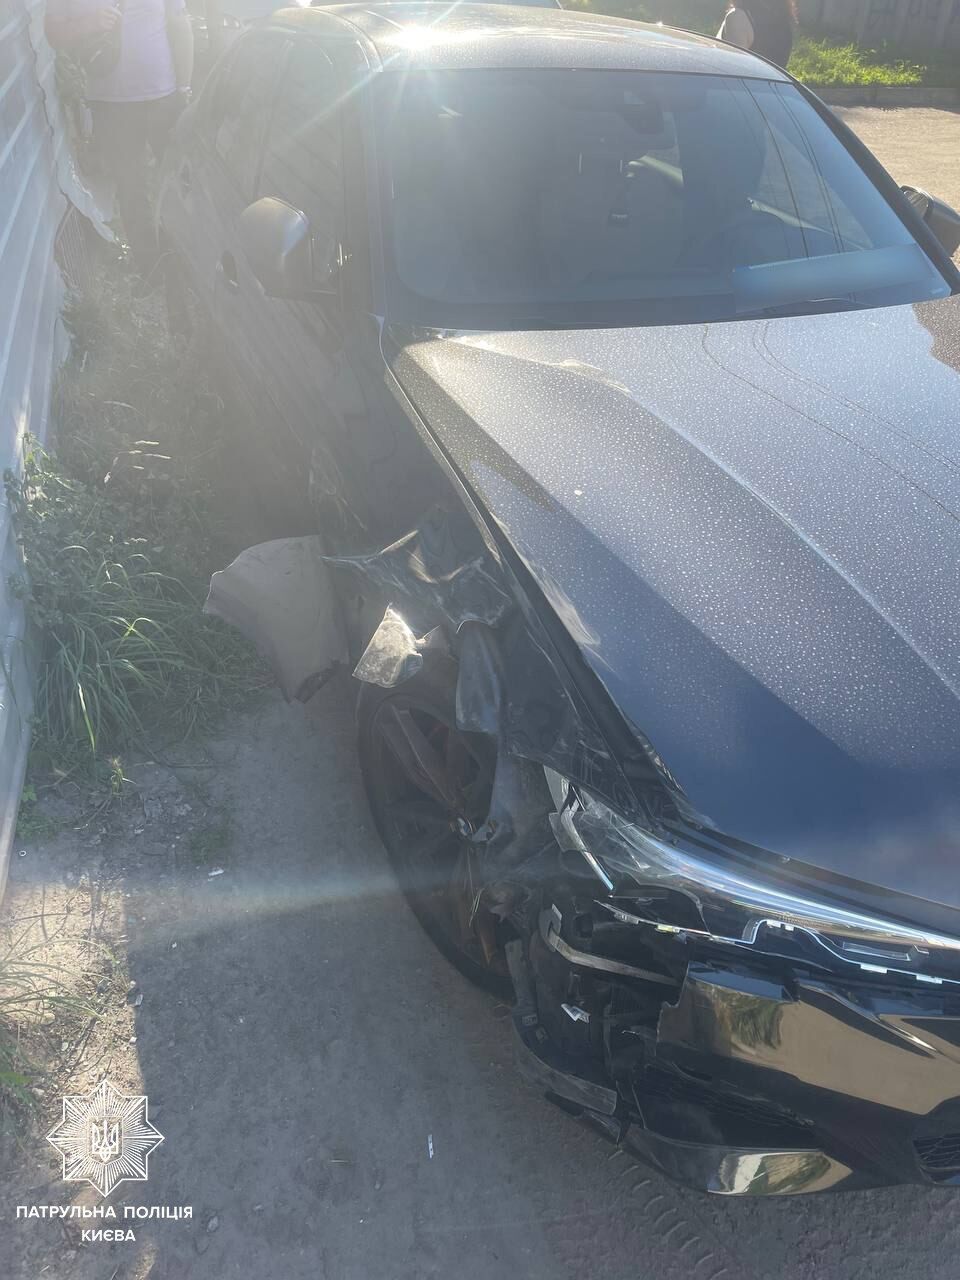 В Киеве водитель BMW протаранил две припаркованные машины и скрылся: у виновника ДТП обнаружили признаки опьянения. Фото